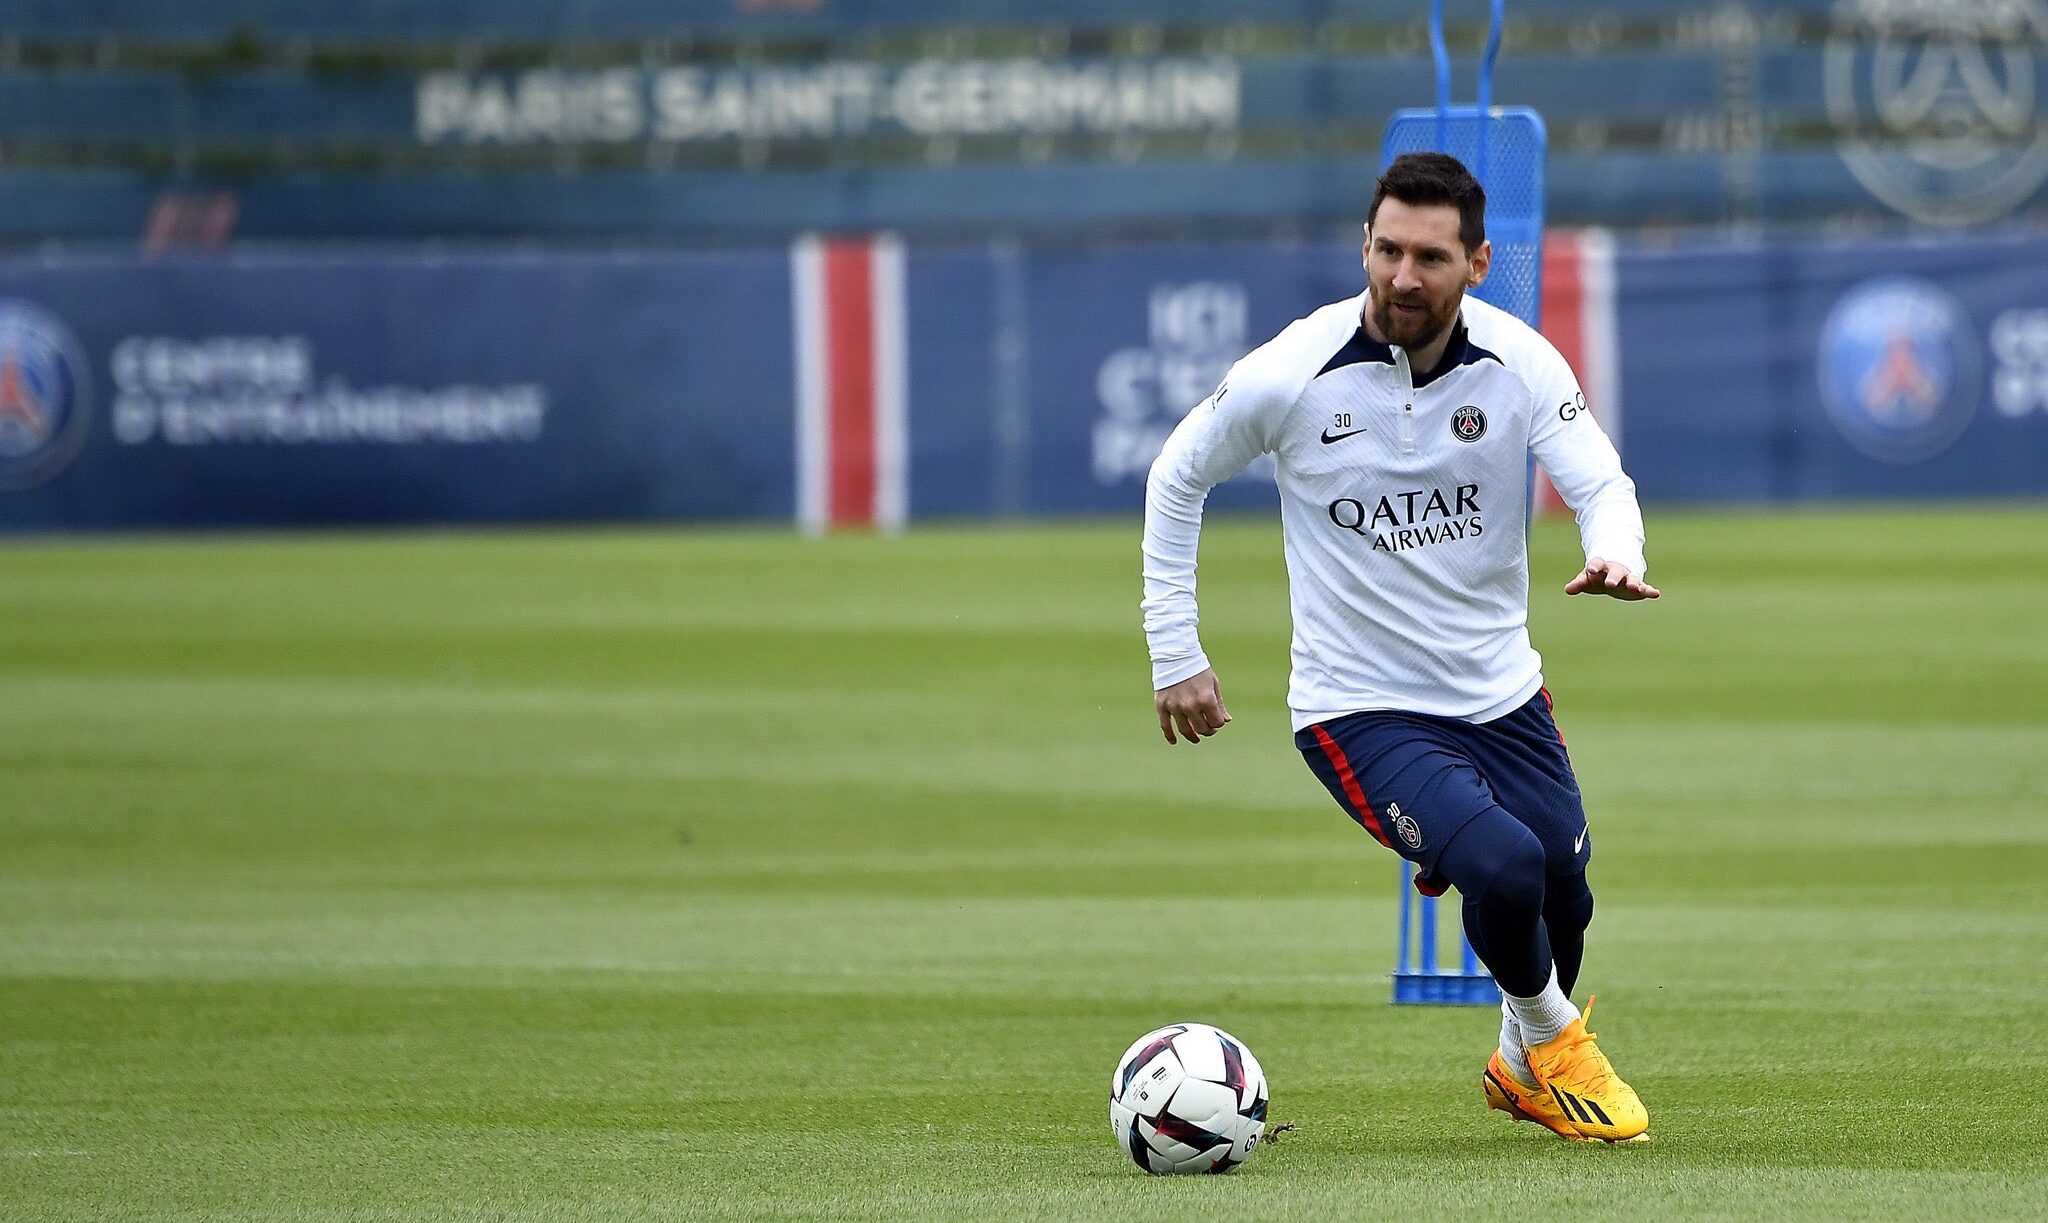 Luego de pedir disculpas y volver a entrenar, Lionel Messi será inicial mañana con el PSG